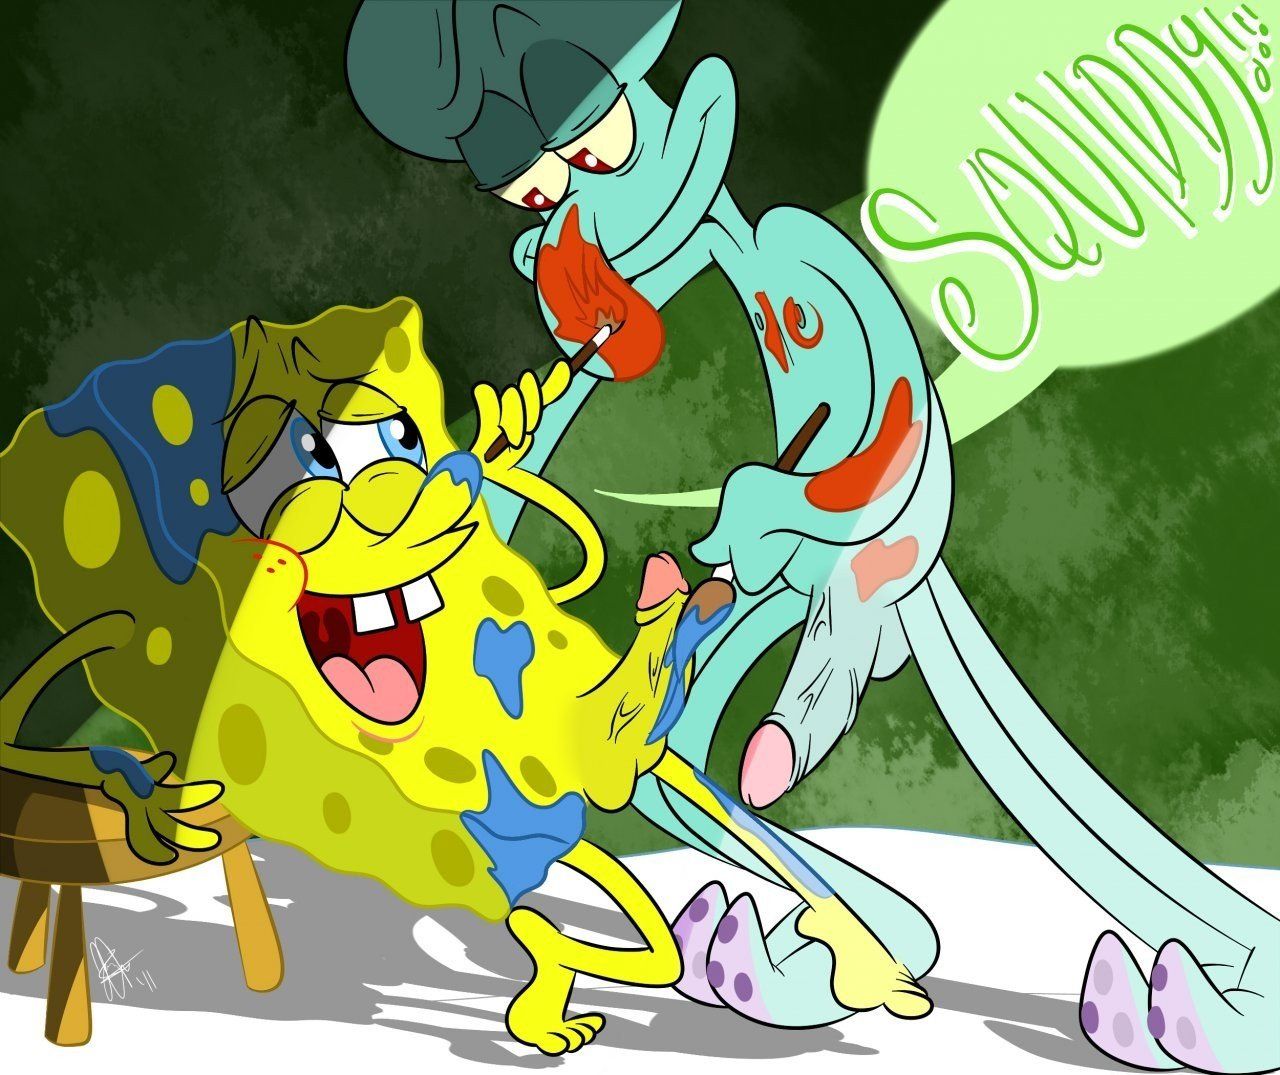 Radar reccomend Spongebob squarepants characters porno